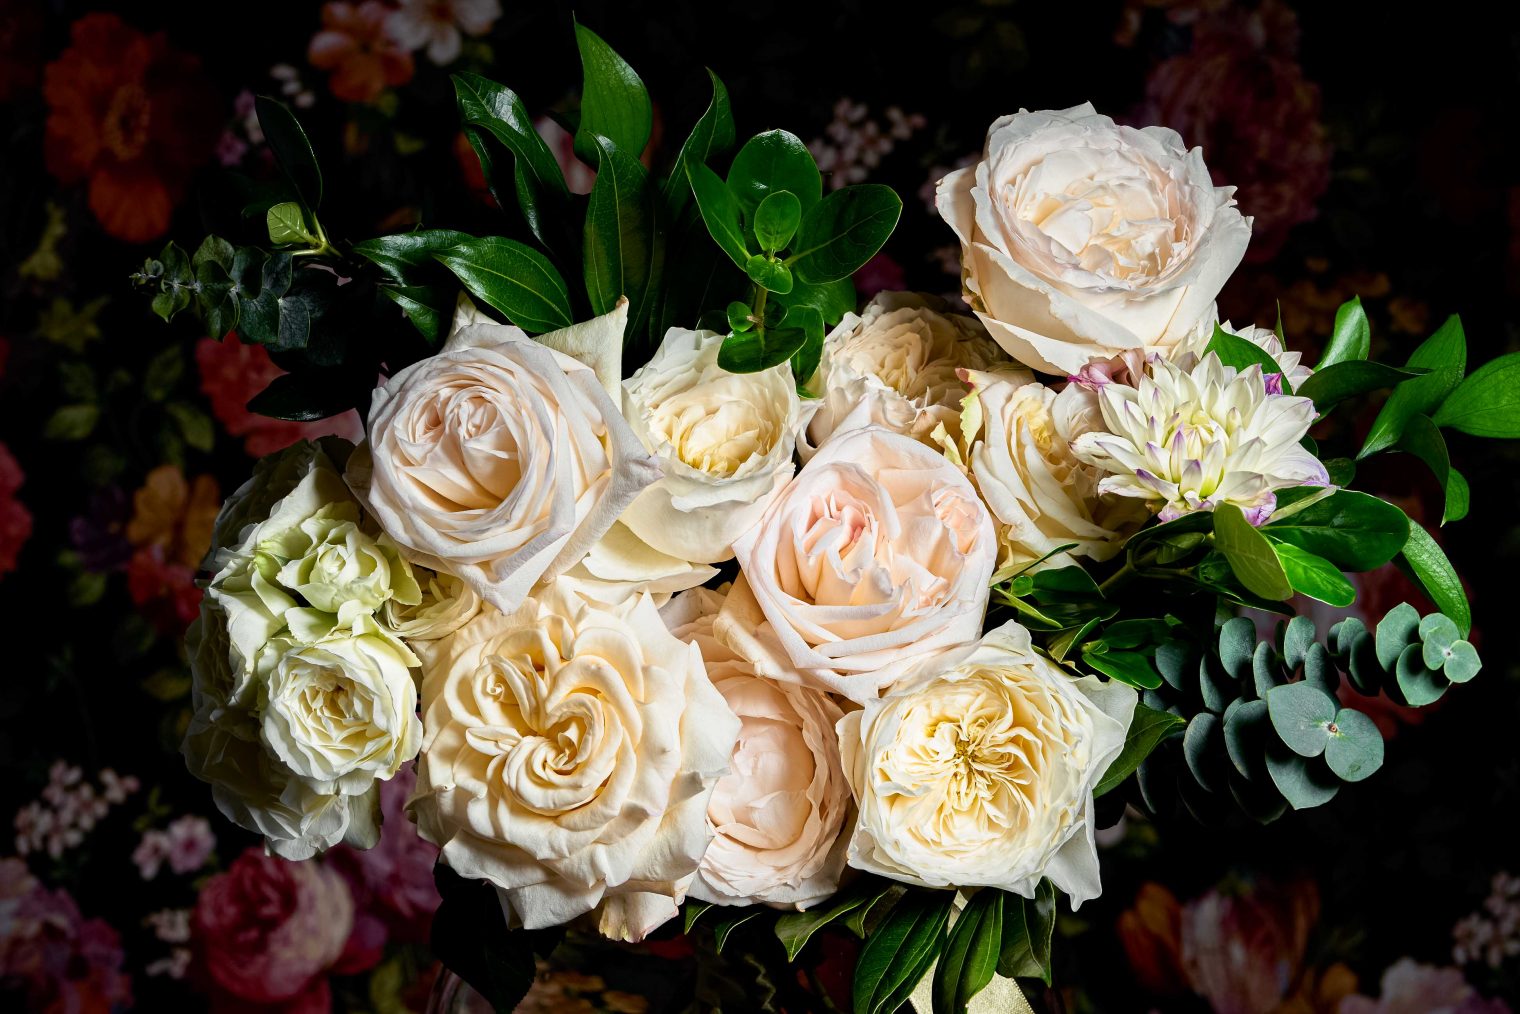 White roses and dahlias